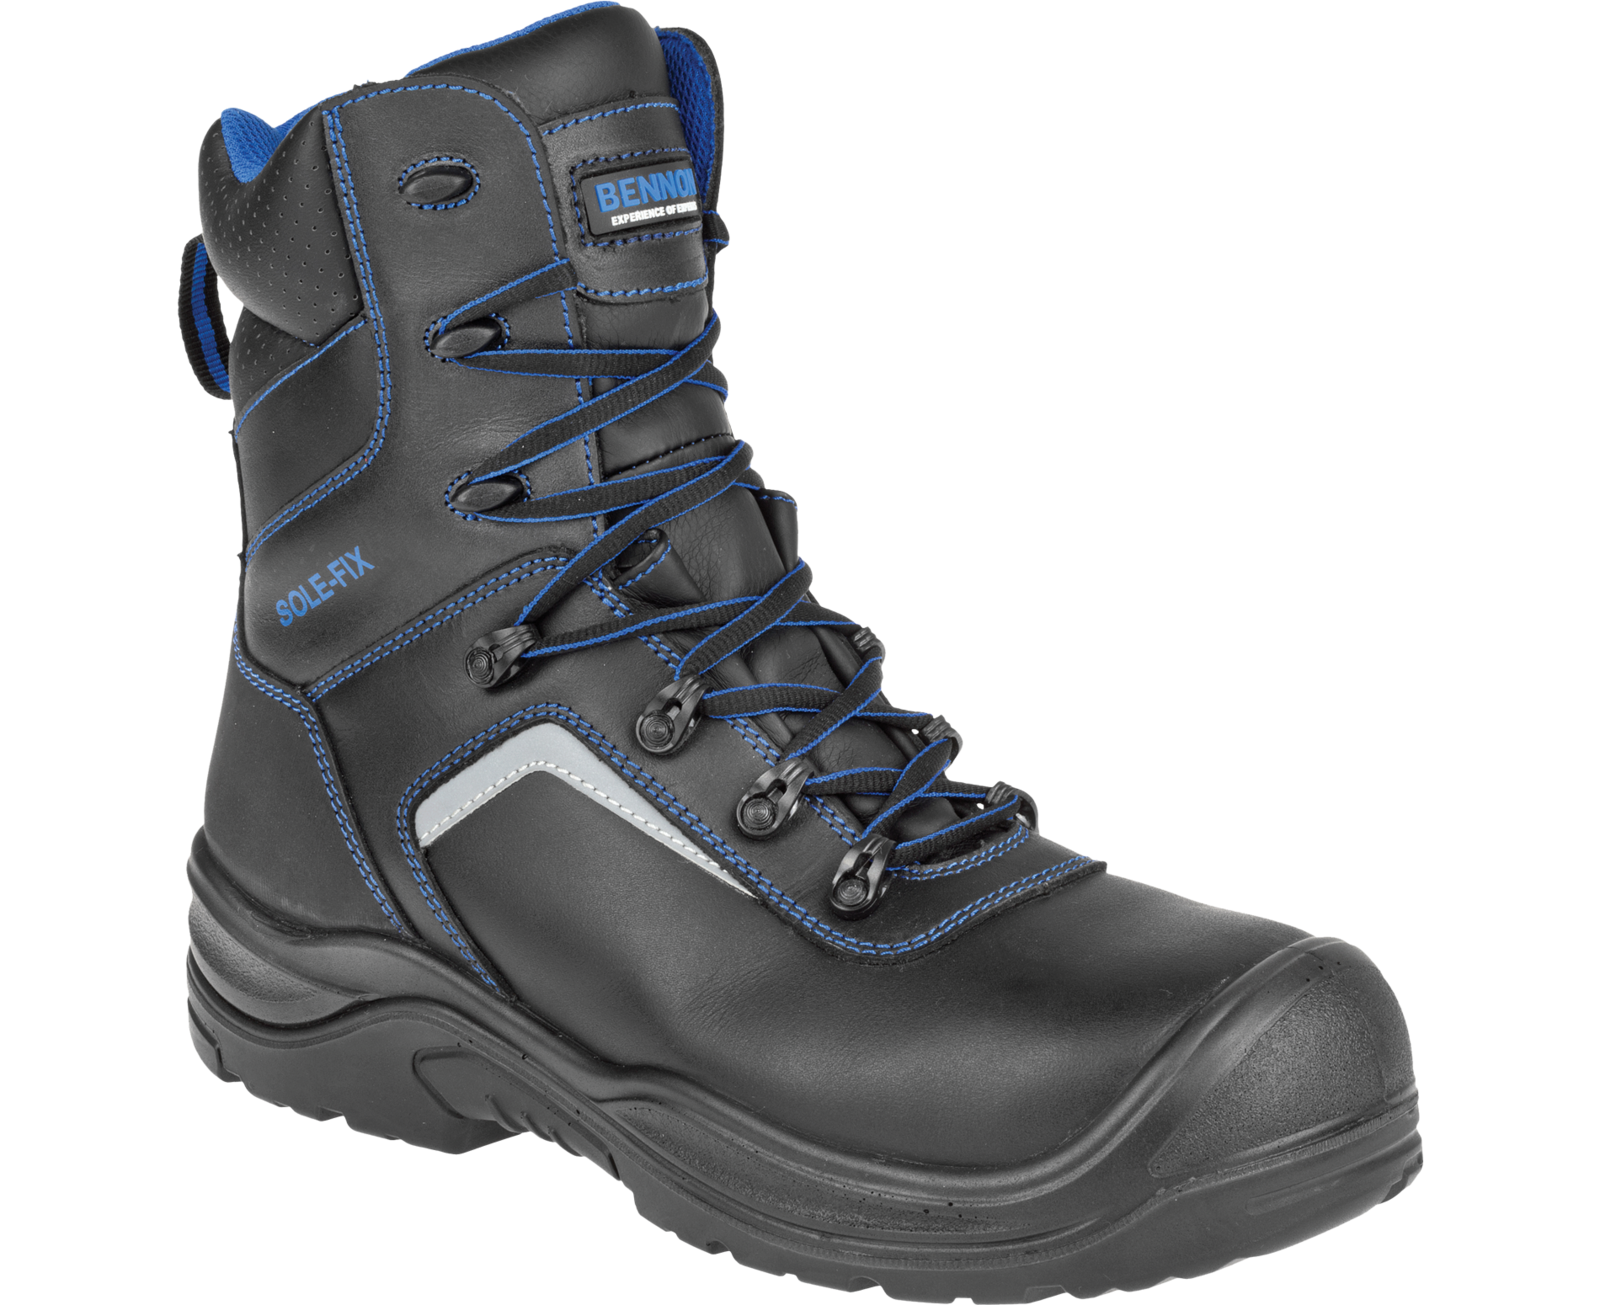 Bezpečnostná obuv Bennon Raptor S3 - veľkosť: 36, farba: čierna/modrá